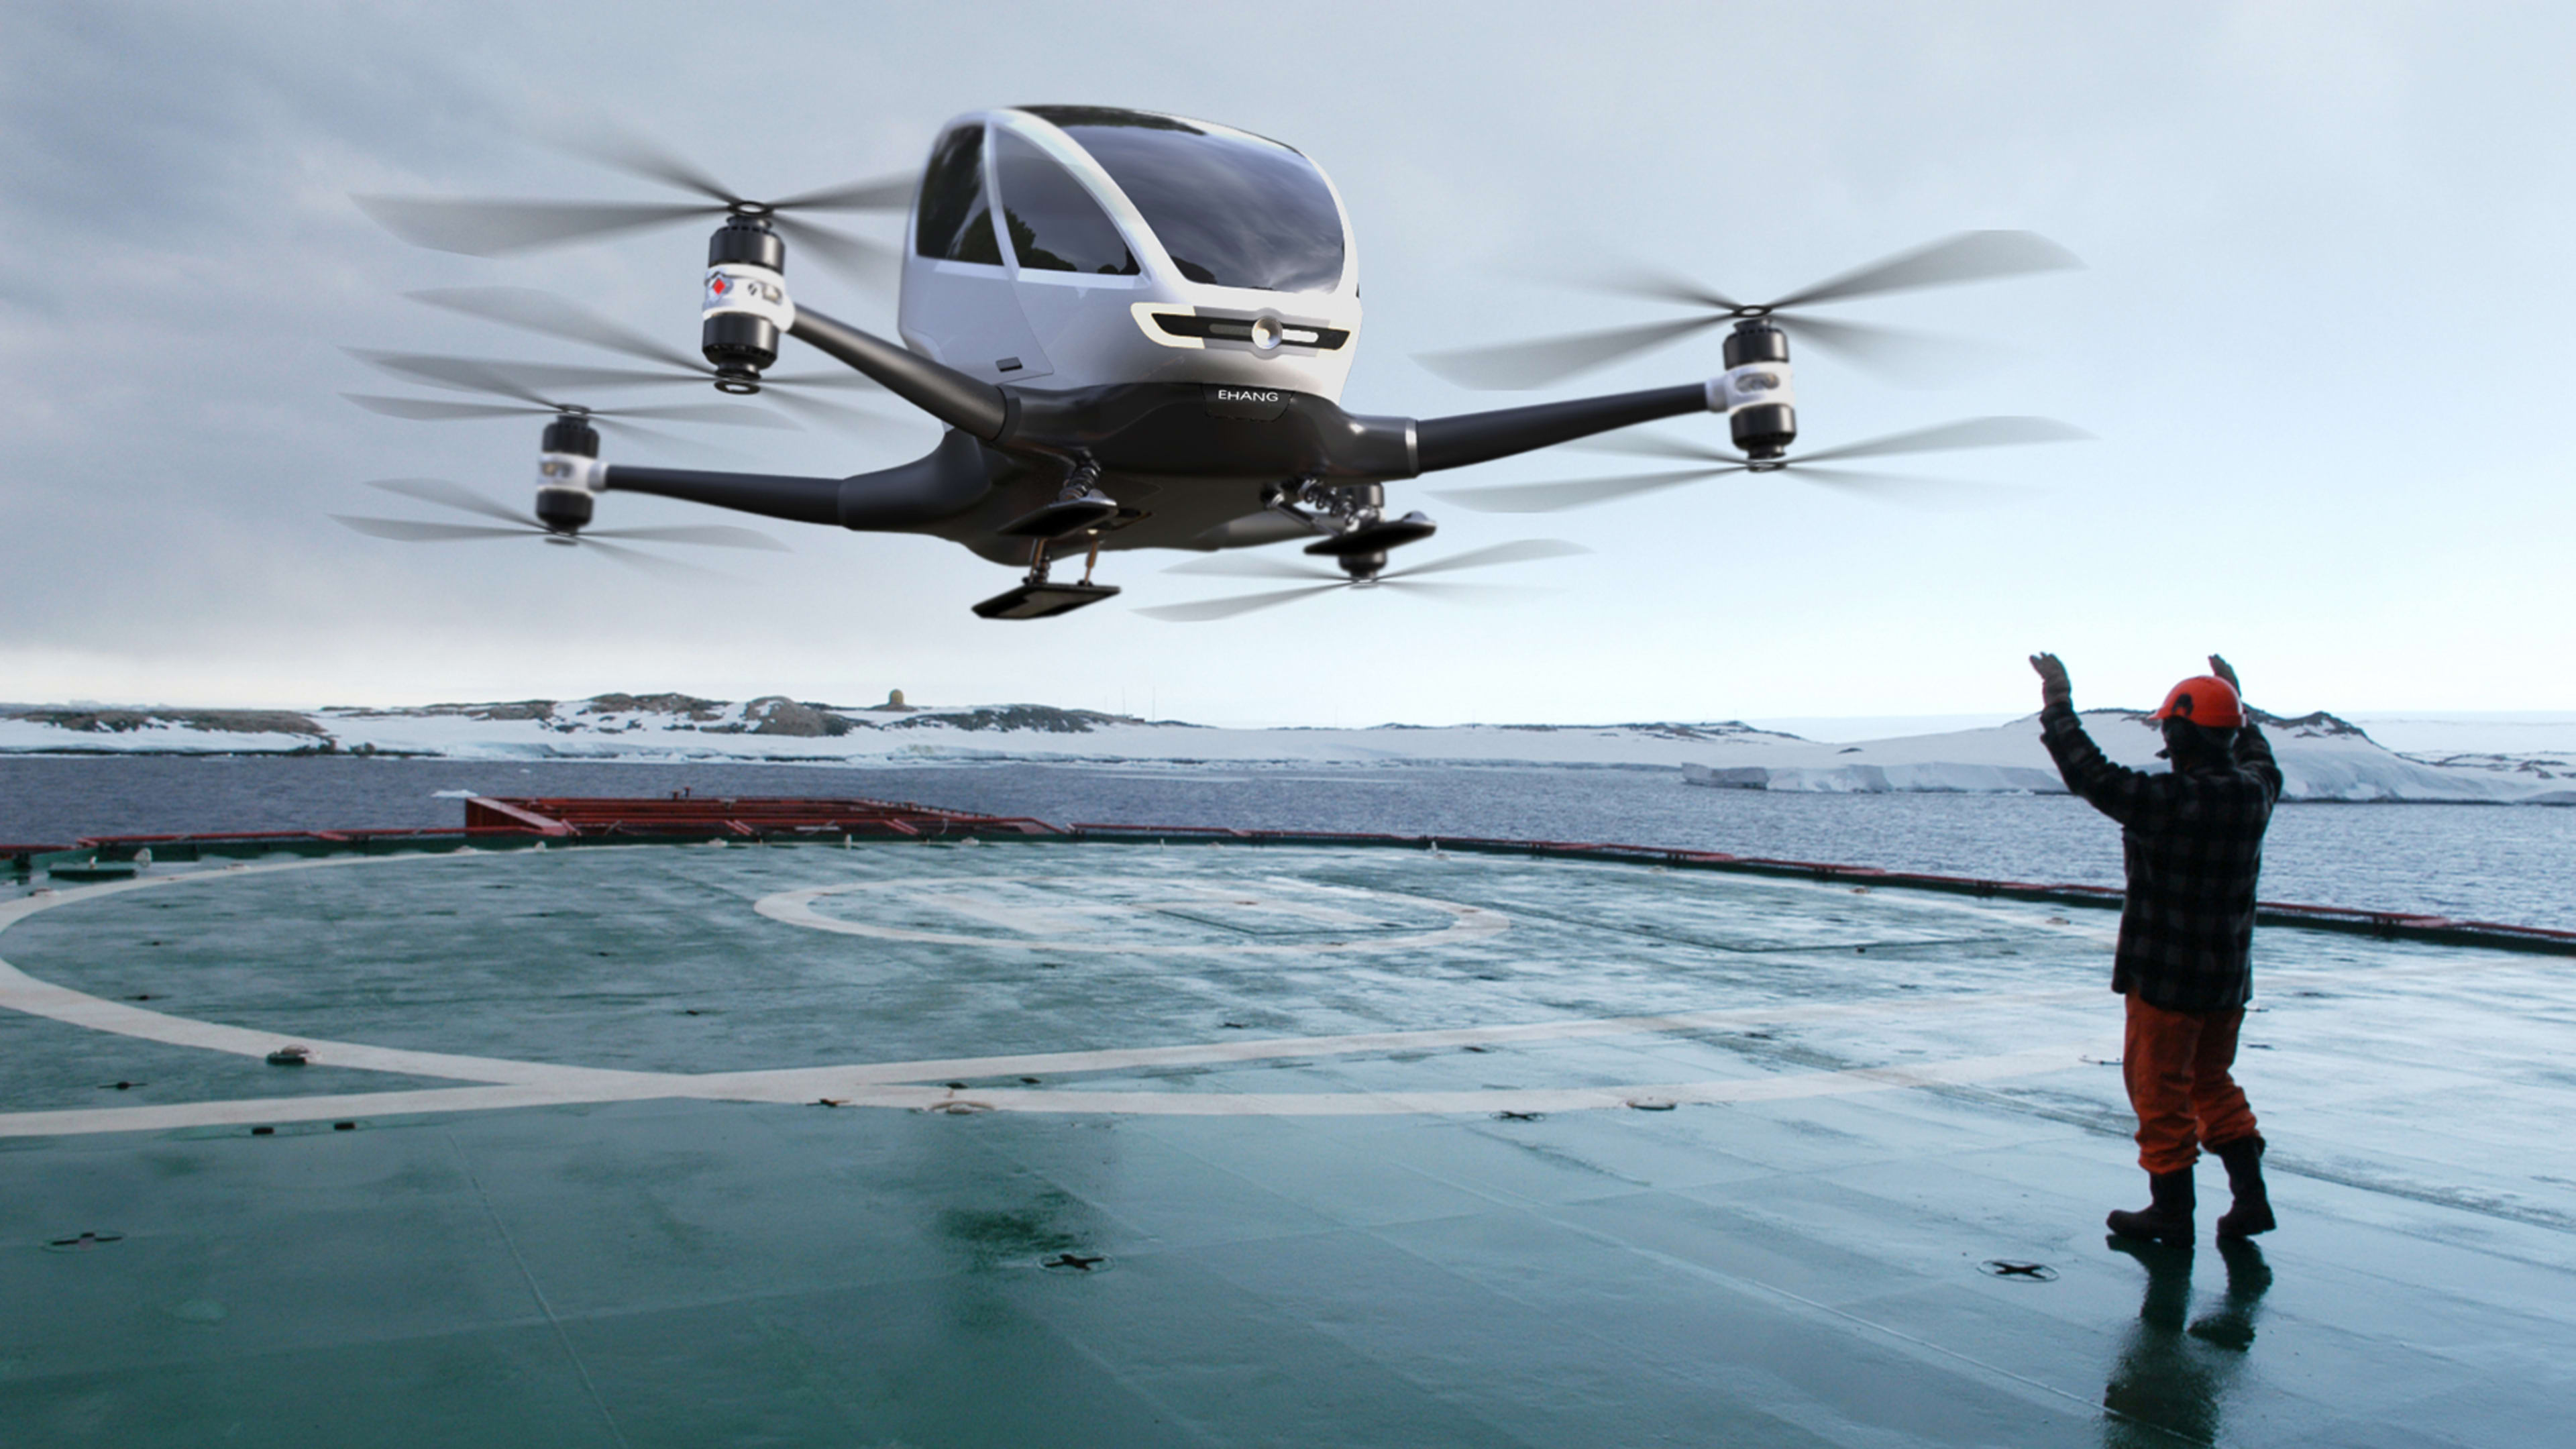 Could This One-Passenger Autonomous Drone Change Transportation Forever?